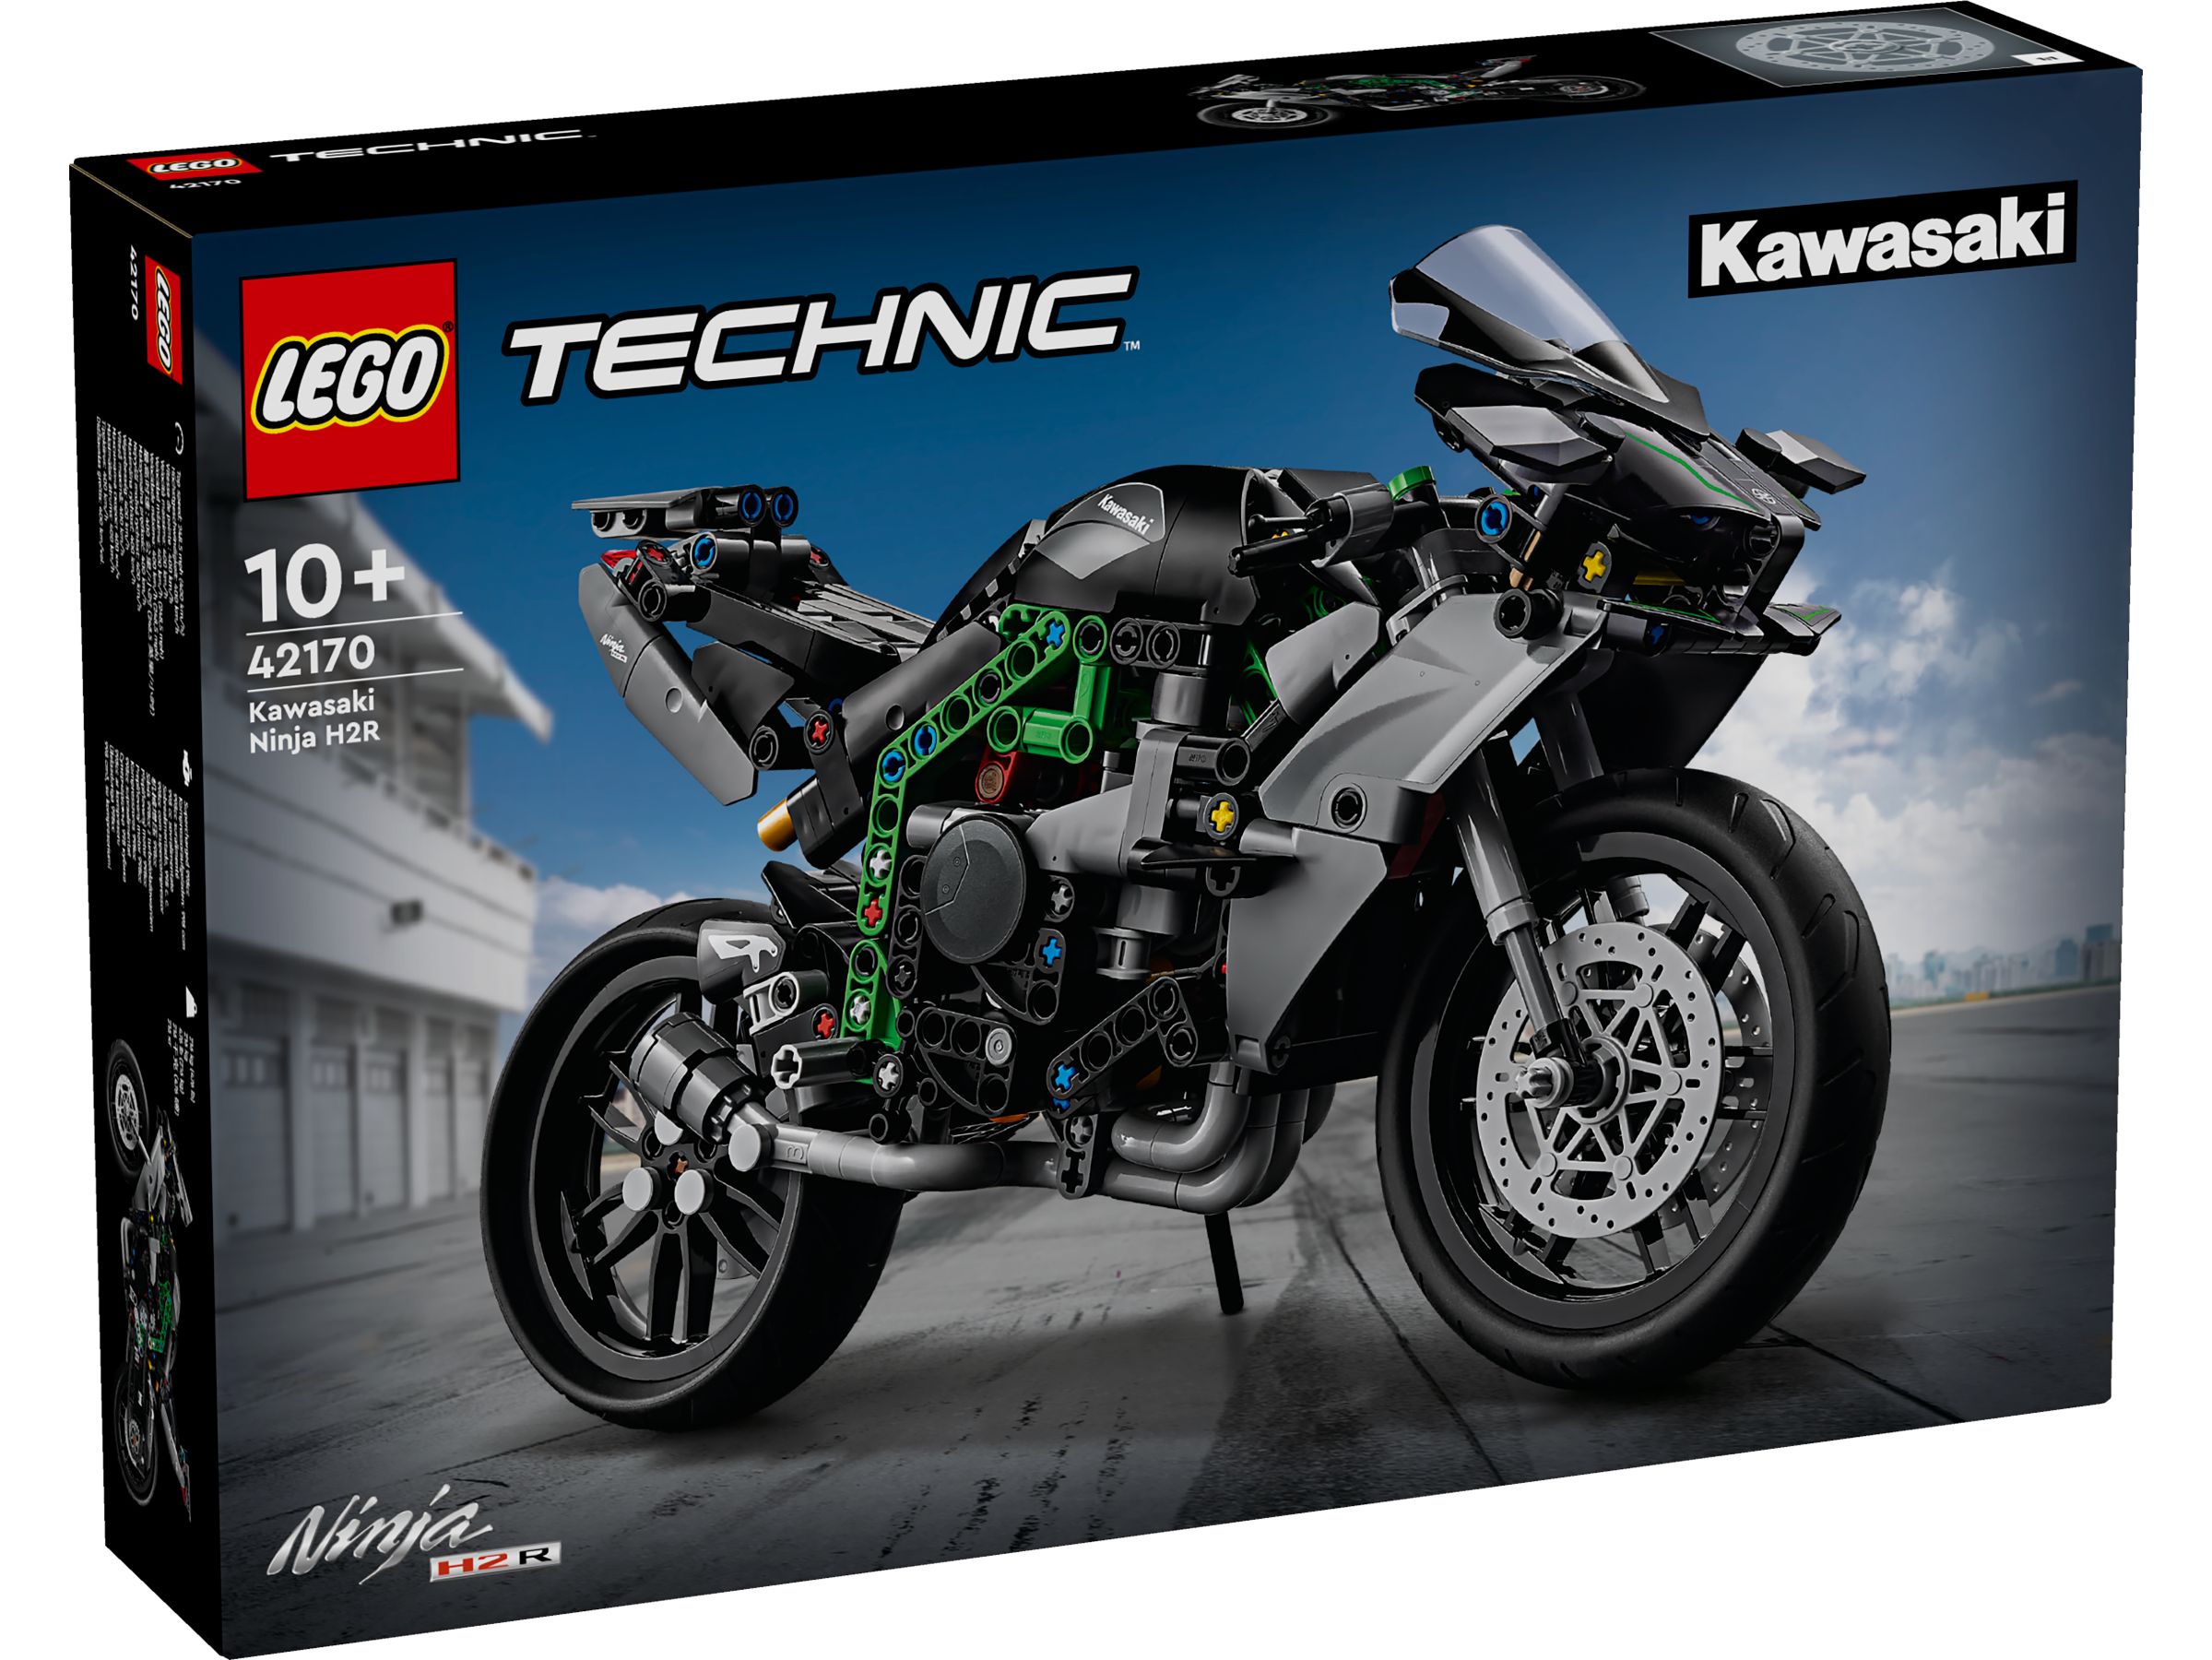 LEGO Technic 42170 Kawasaki Ninja H2R Motorrad LEGO_42170_Box1_v29.jpg